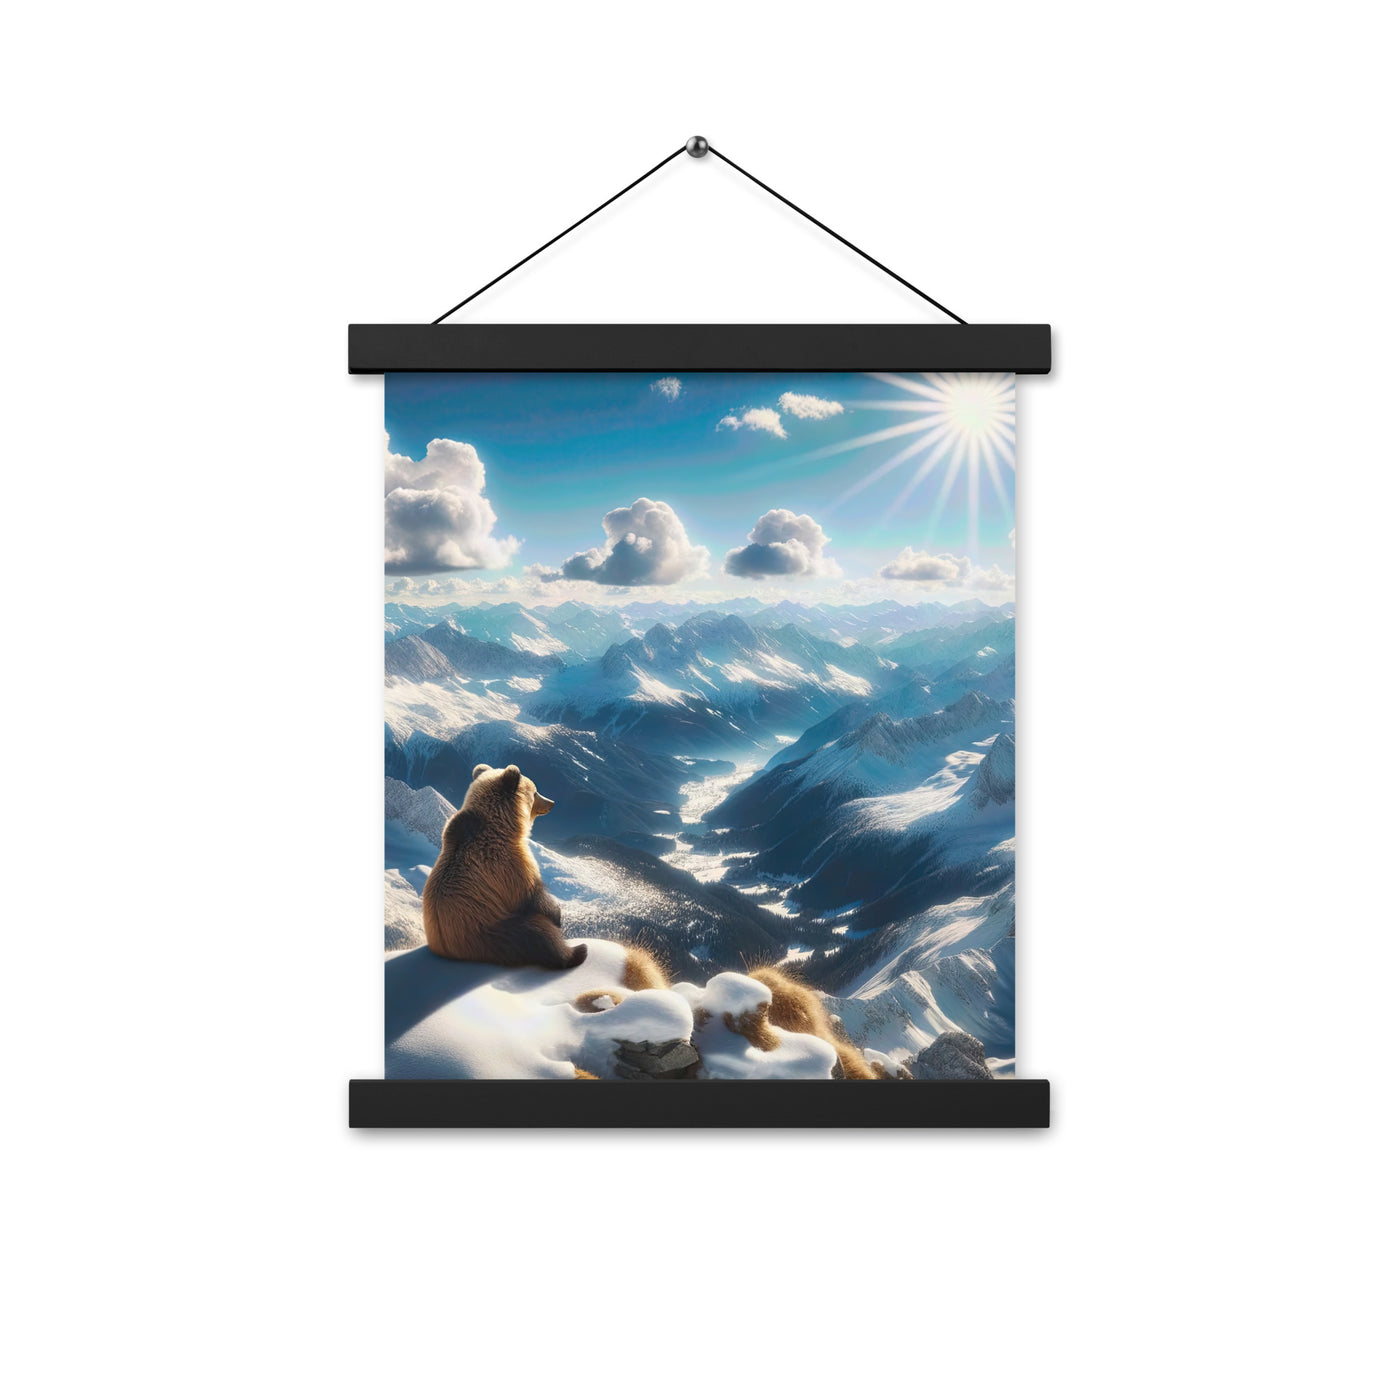 Foto der Alpen im Winter mit Bären auf dem Gipfel, glitzernder Neuschnee unter der Sonne - Premium Poster mit Aufhängung camping xxx yyy zzz 27.9 x 35.6 cm